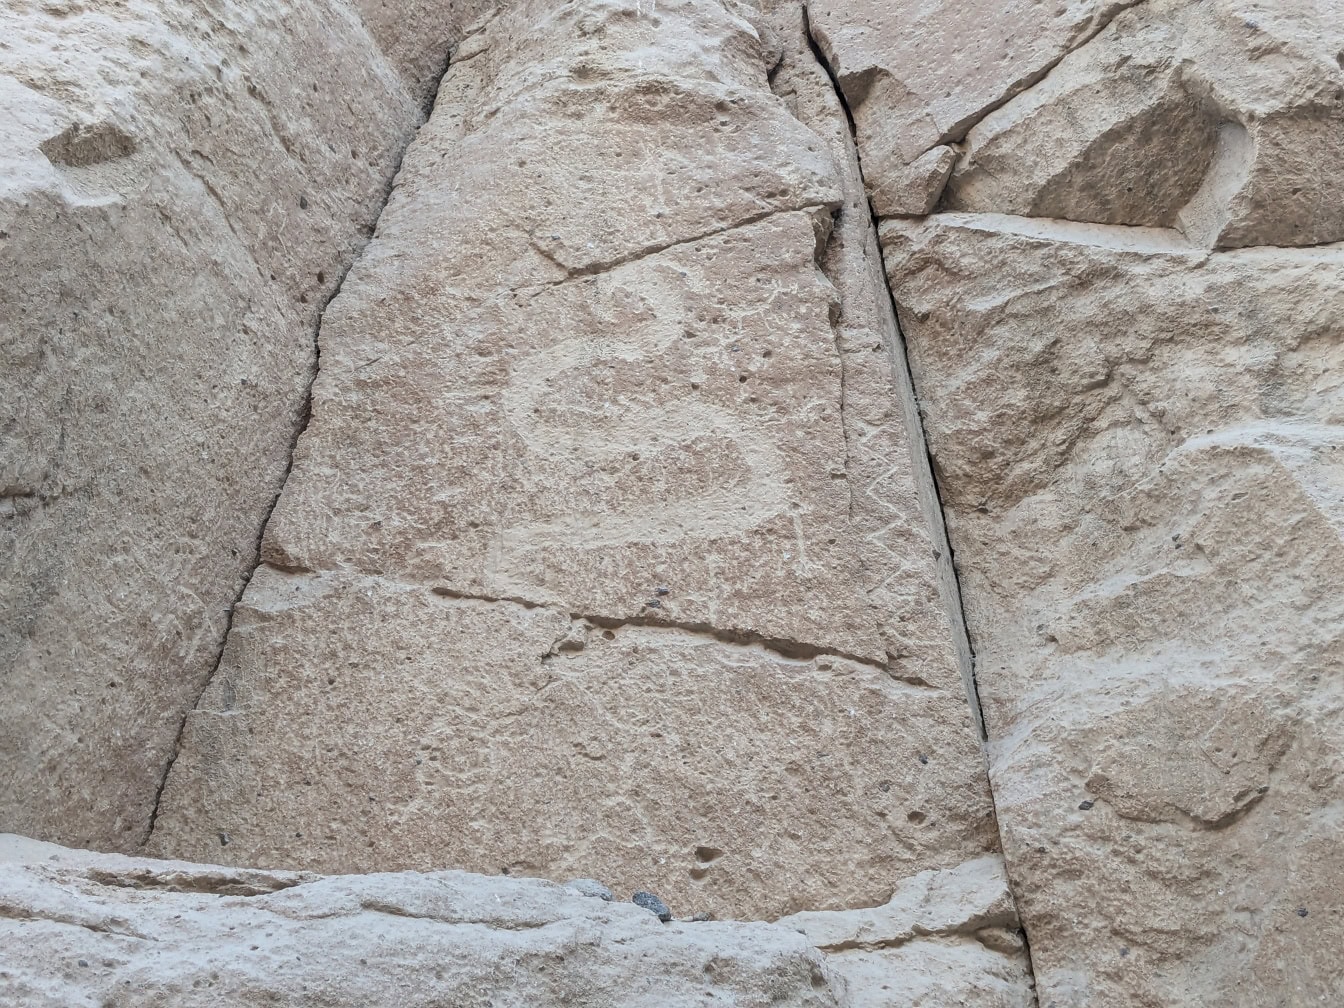 Un pétroglyphe sculpté dans la pierre représentant un animal ressemblant à un serpent ou à un dragon, un art de l’âge de pierre que l’on trouve au Pérou en Amérique du Sud